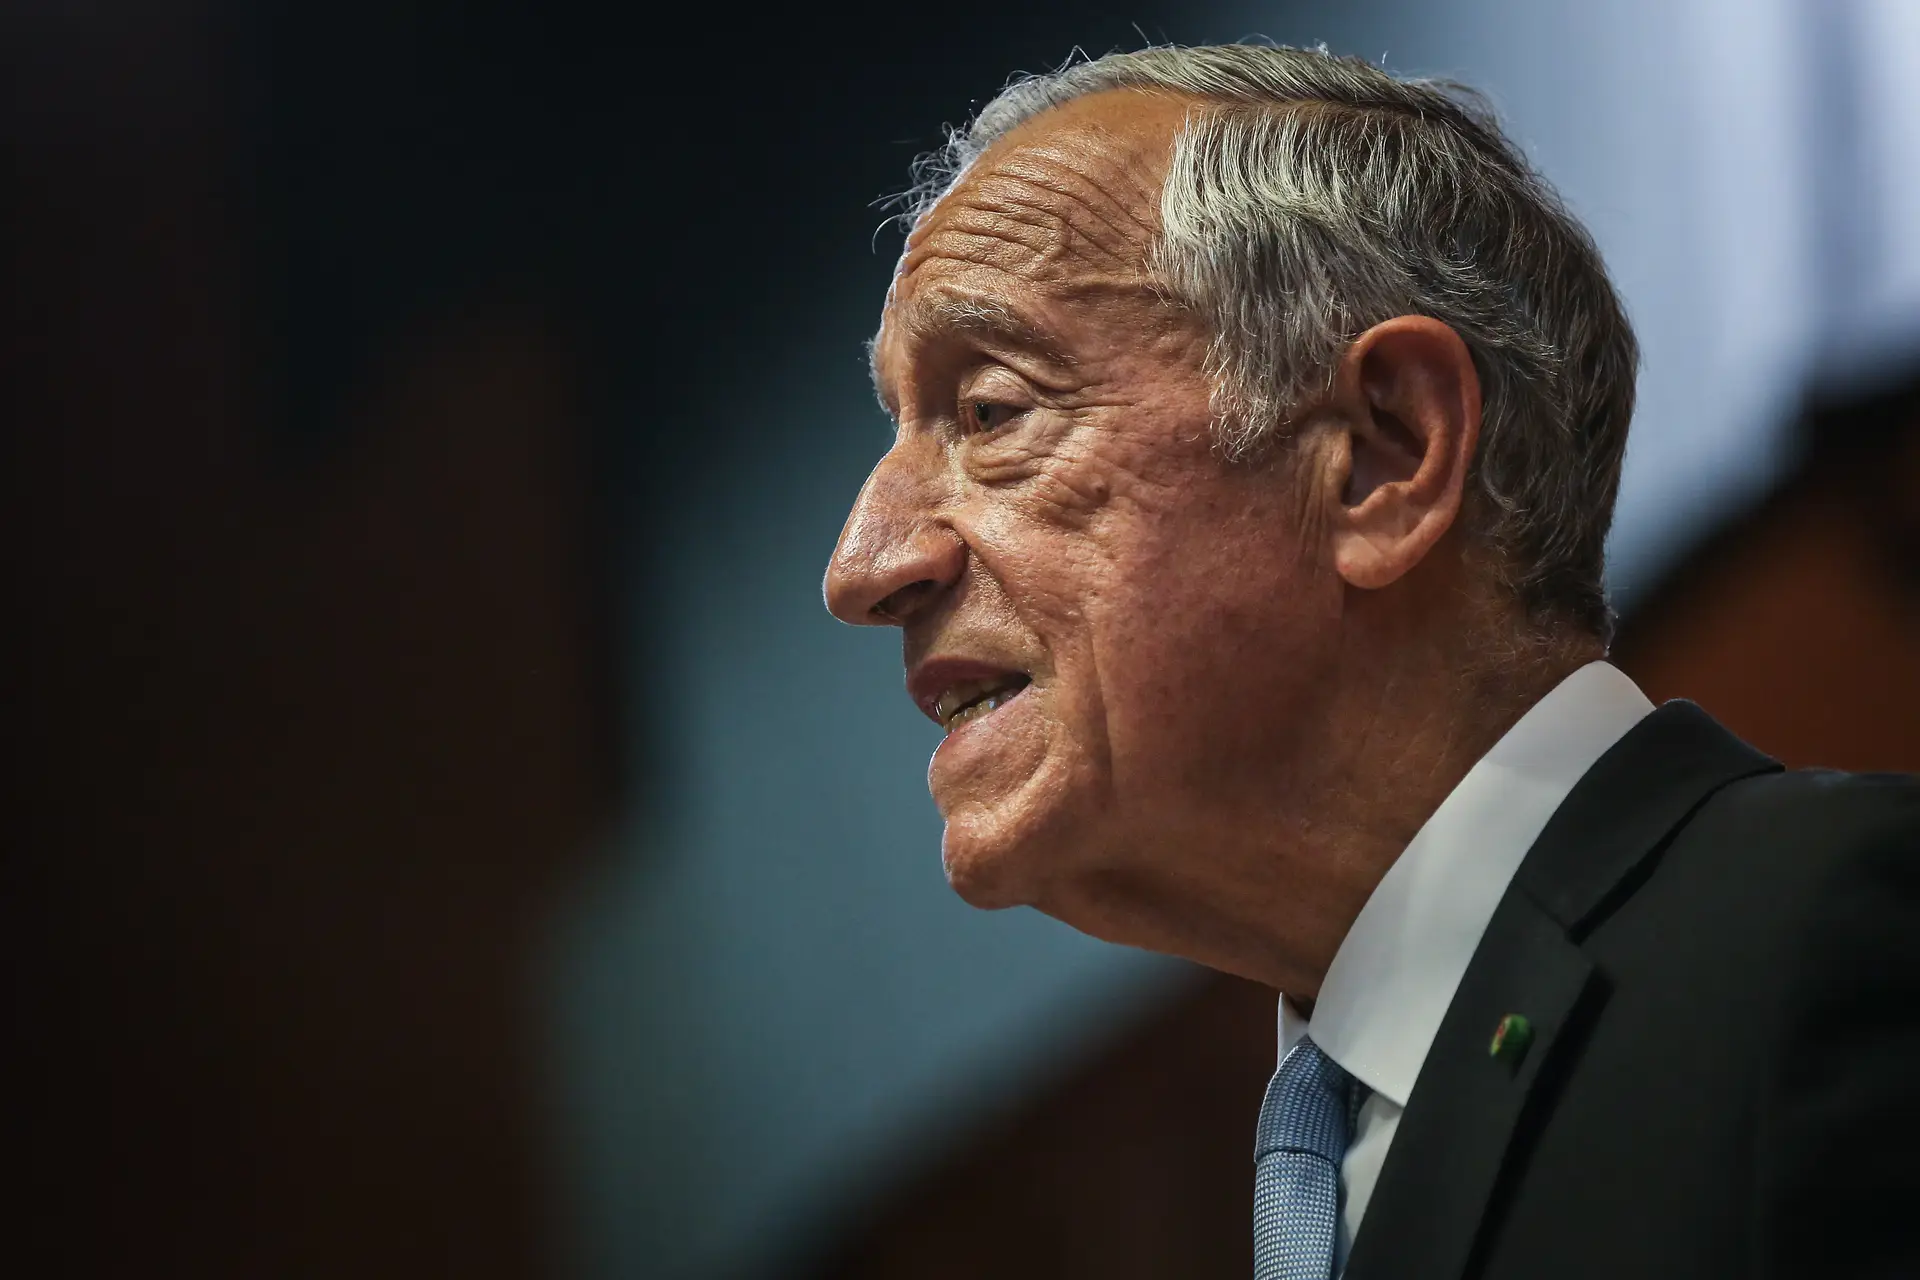 "Portugal pode jogar com ou sem Cristiano", assegura o Presidente Marcelo